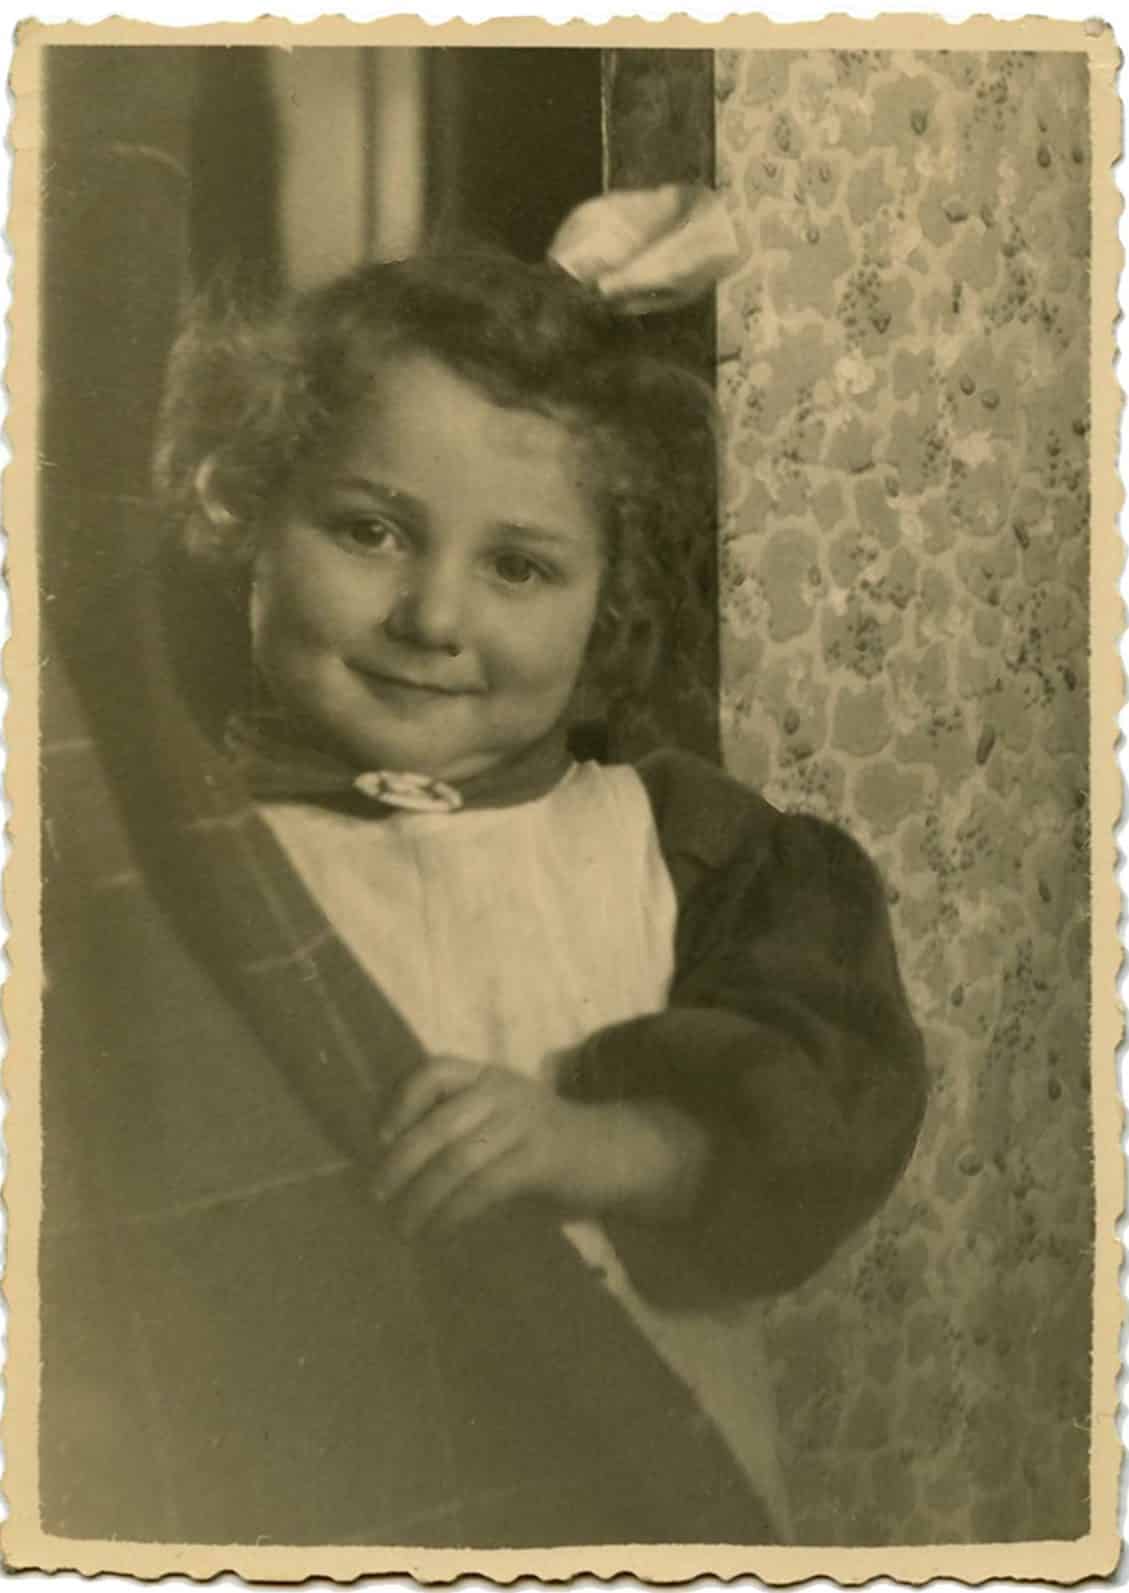 Wanda Wojciekiewicz, age 4-5